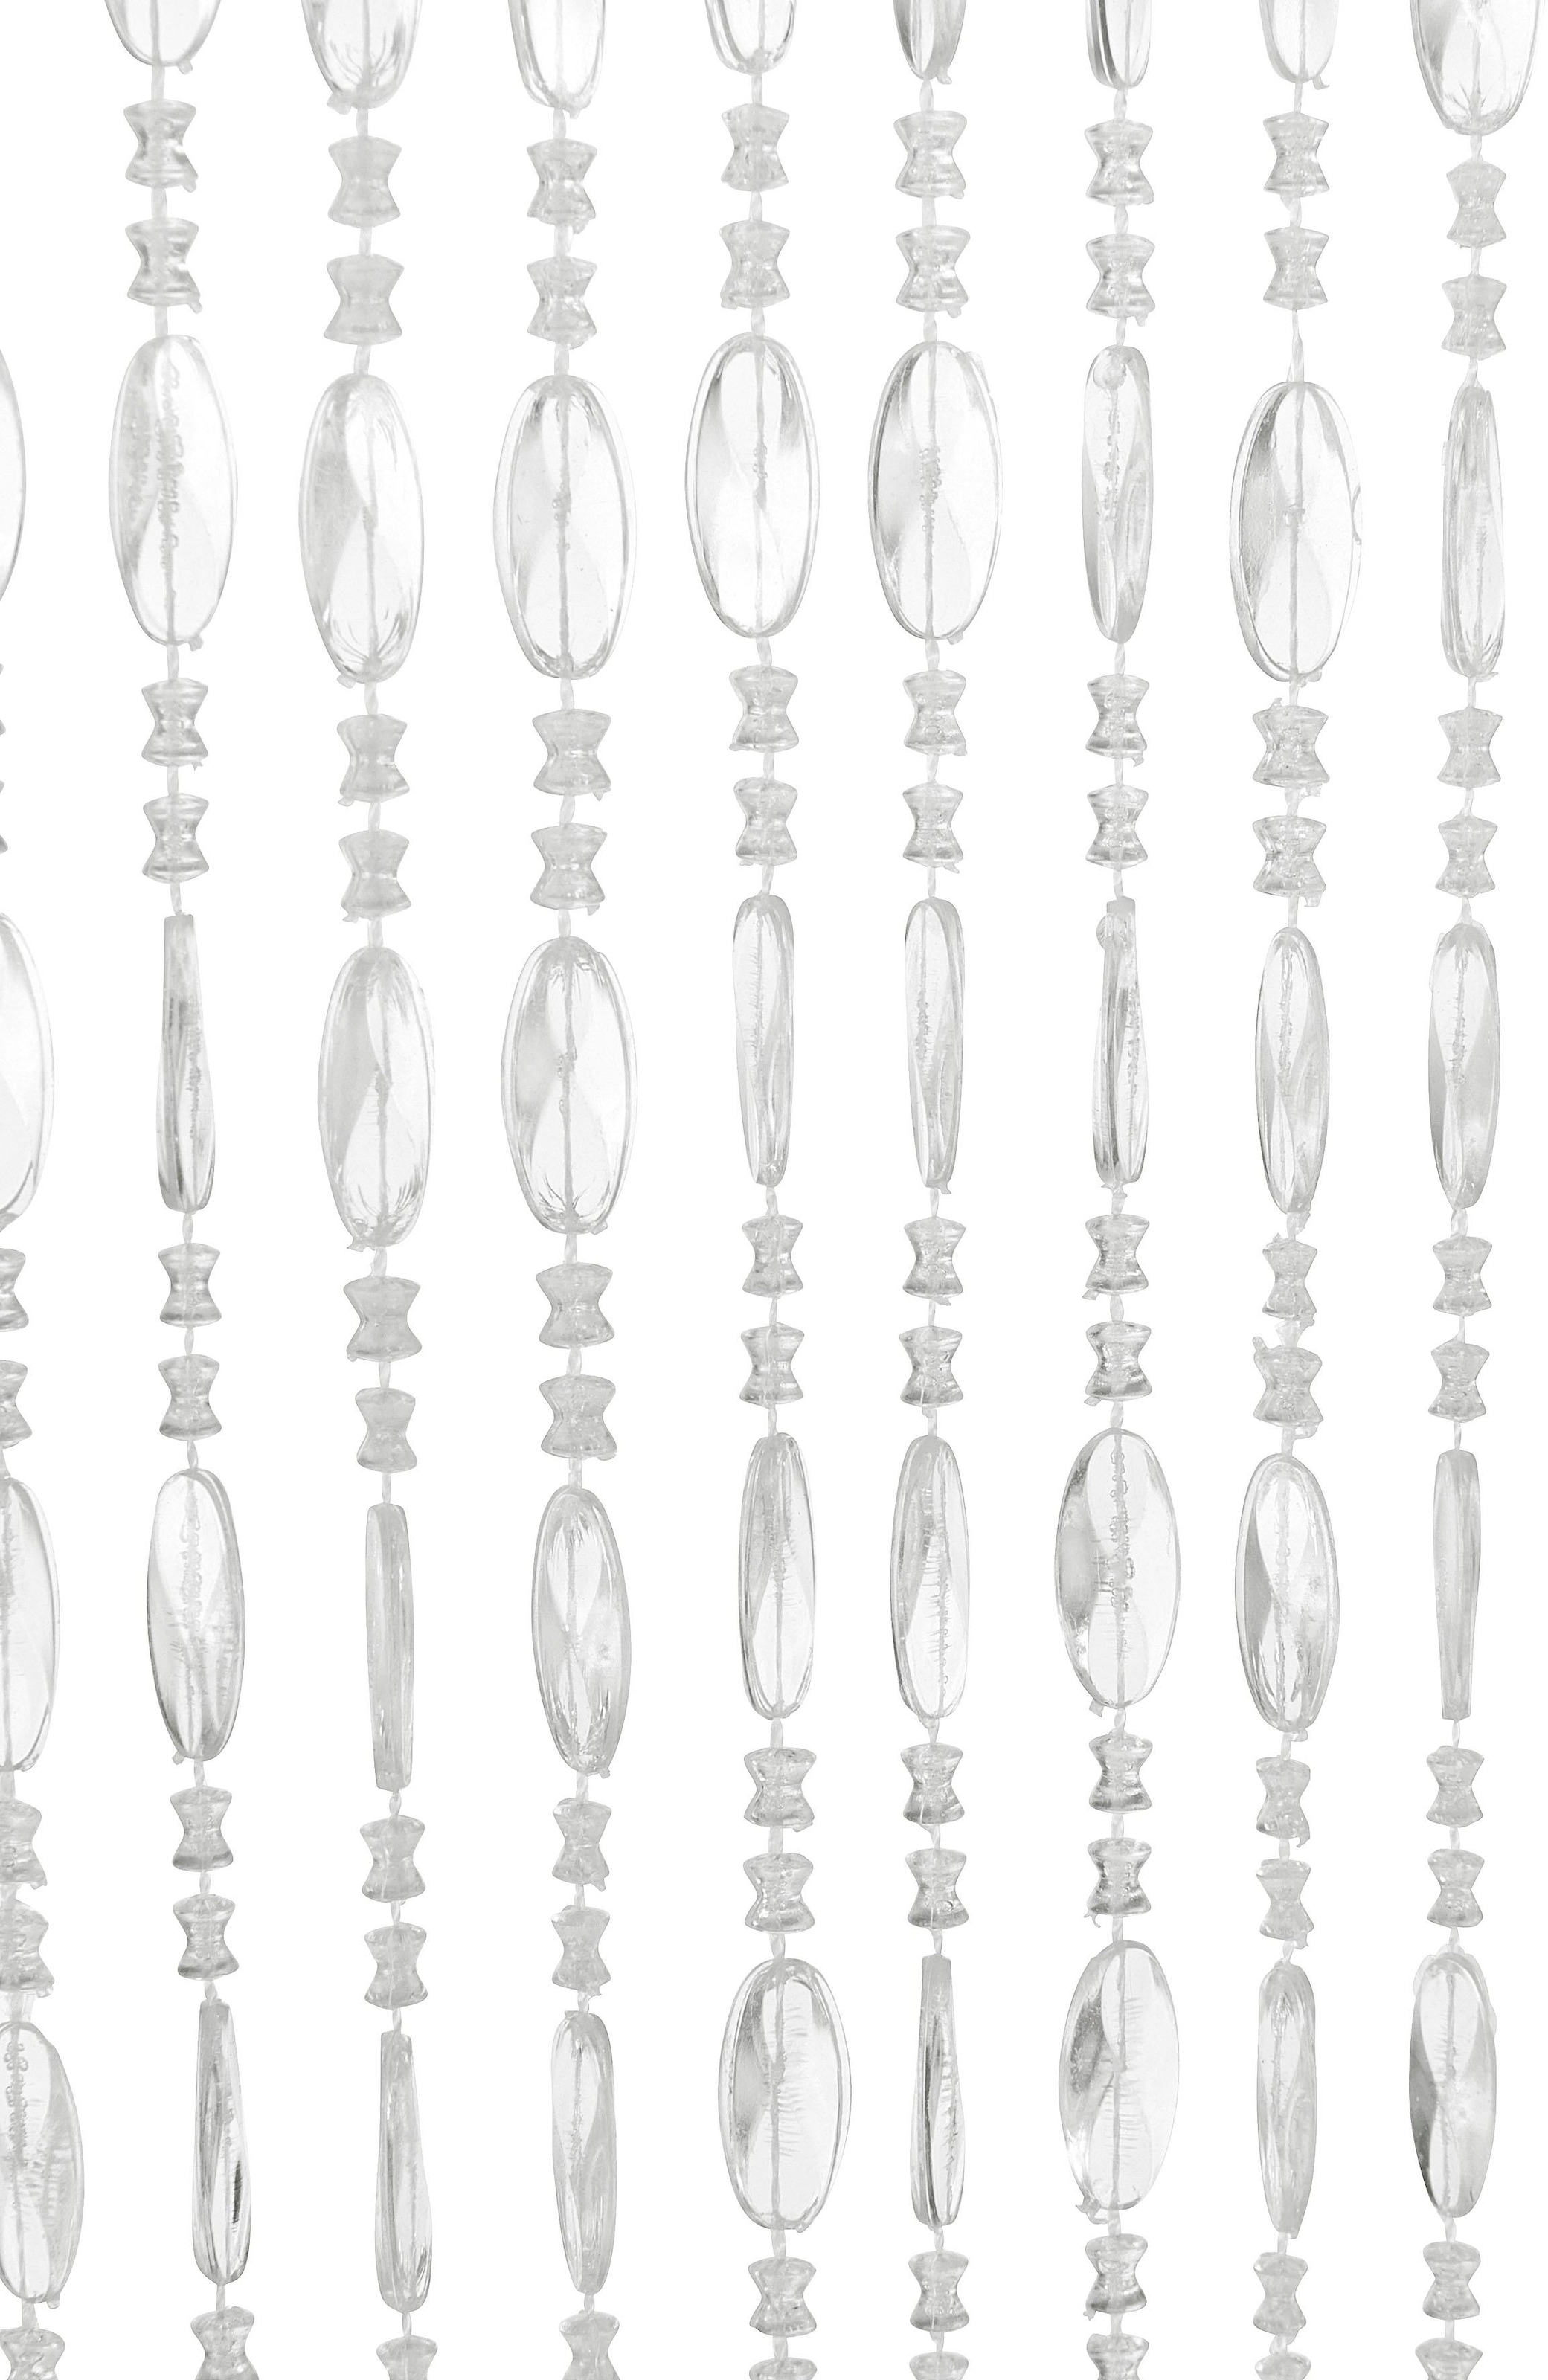 locker Türvorhang »Pearl«, (1 St.), Kunststoff, transparent